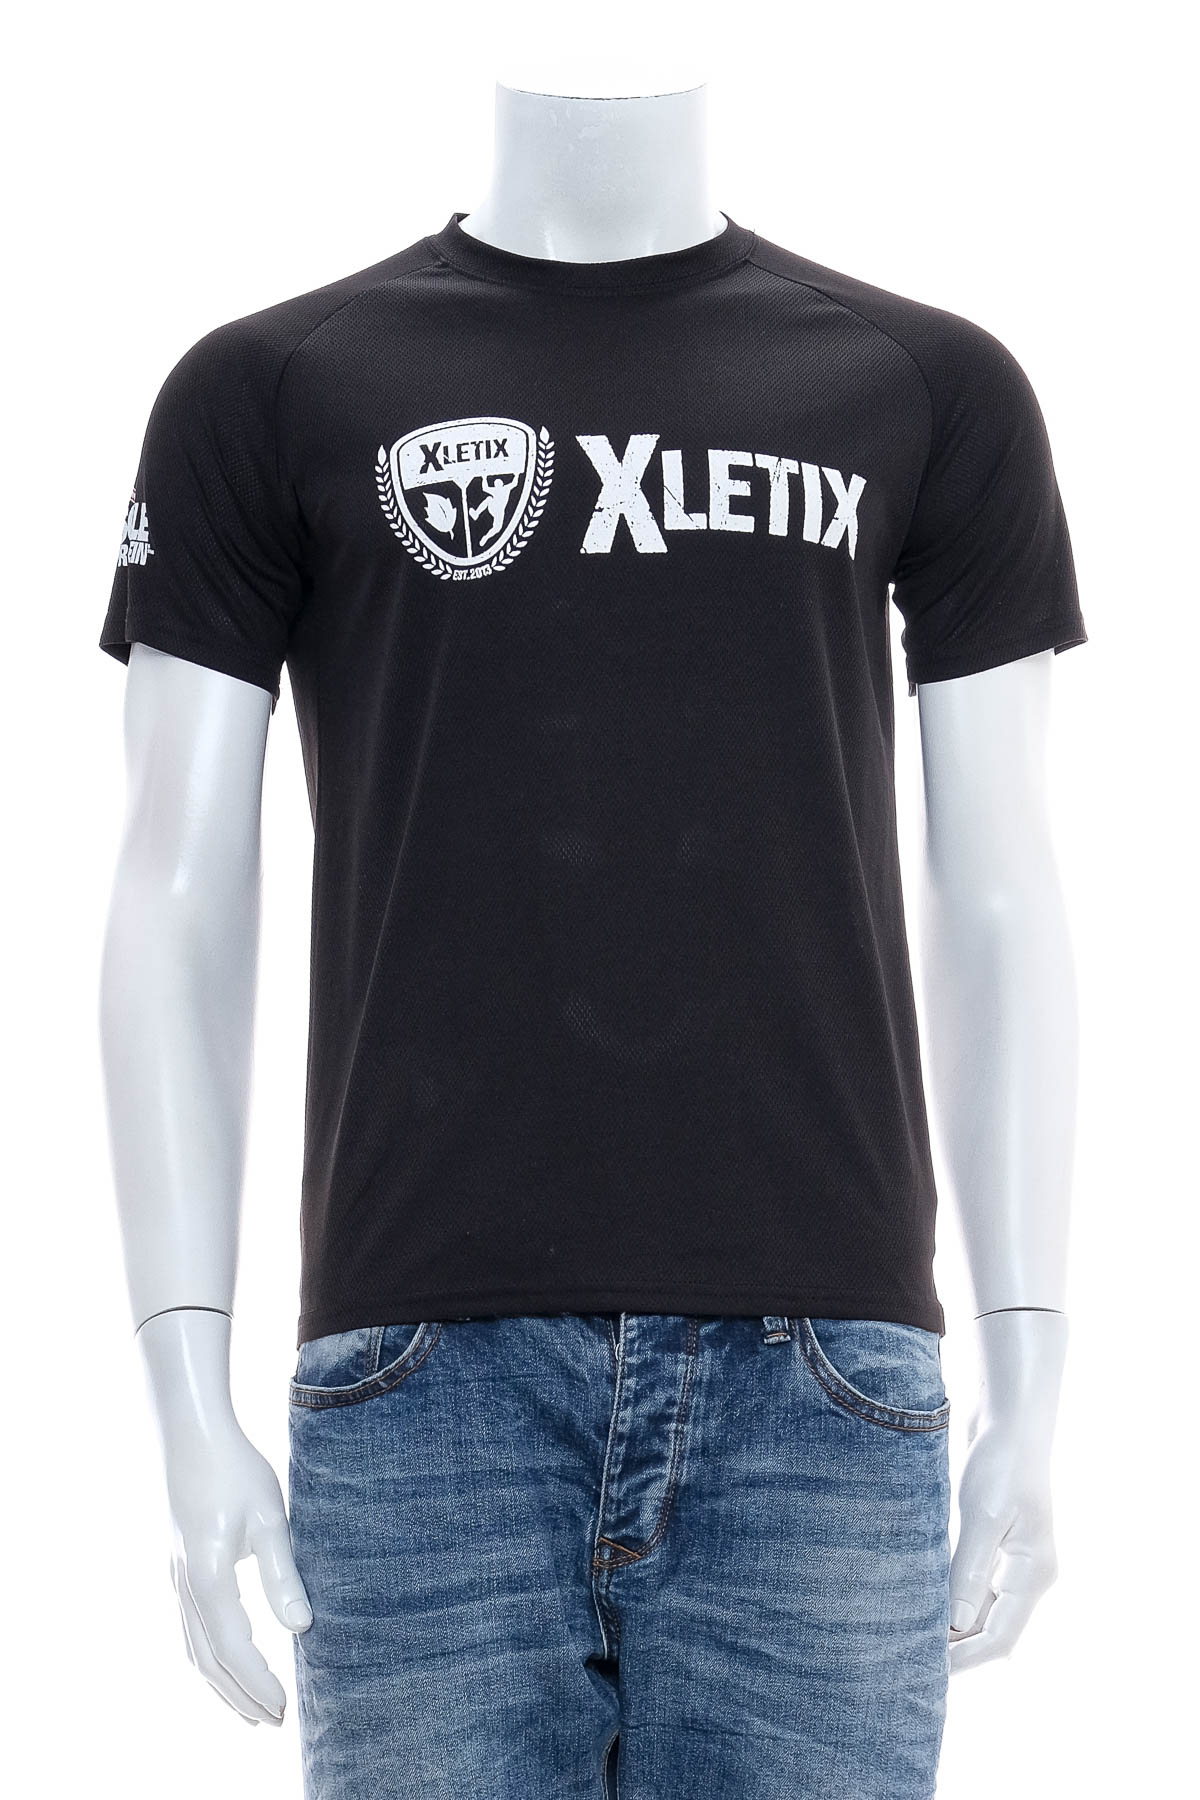 Męska koszulka - XLETIX - 0